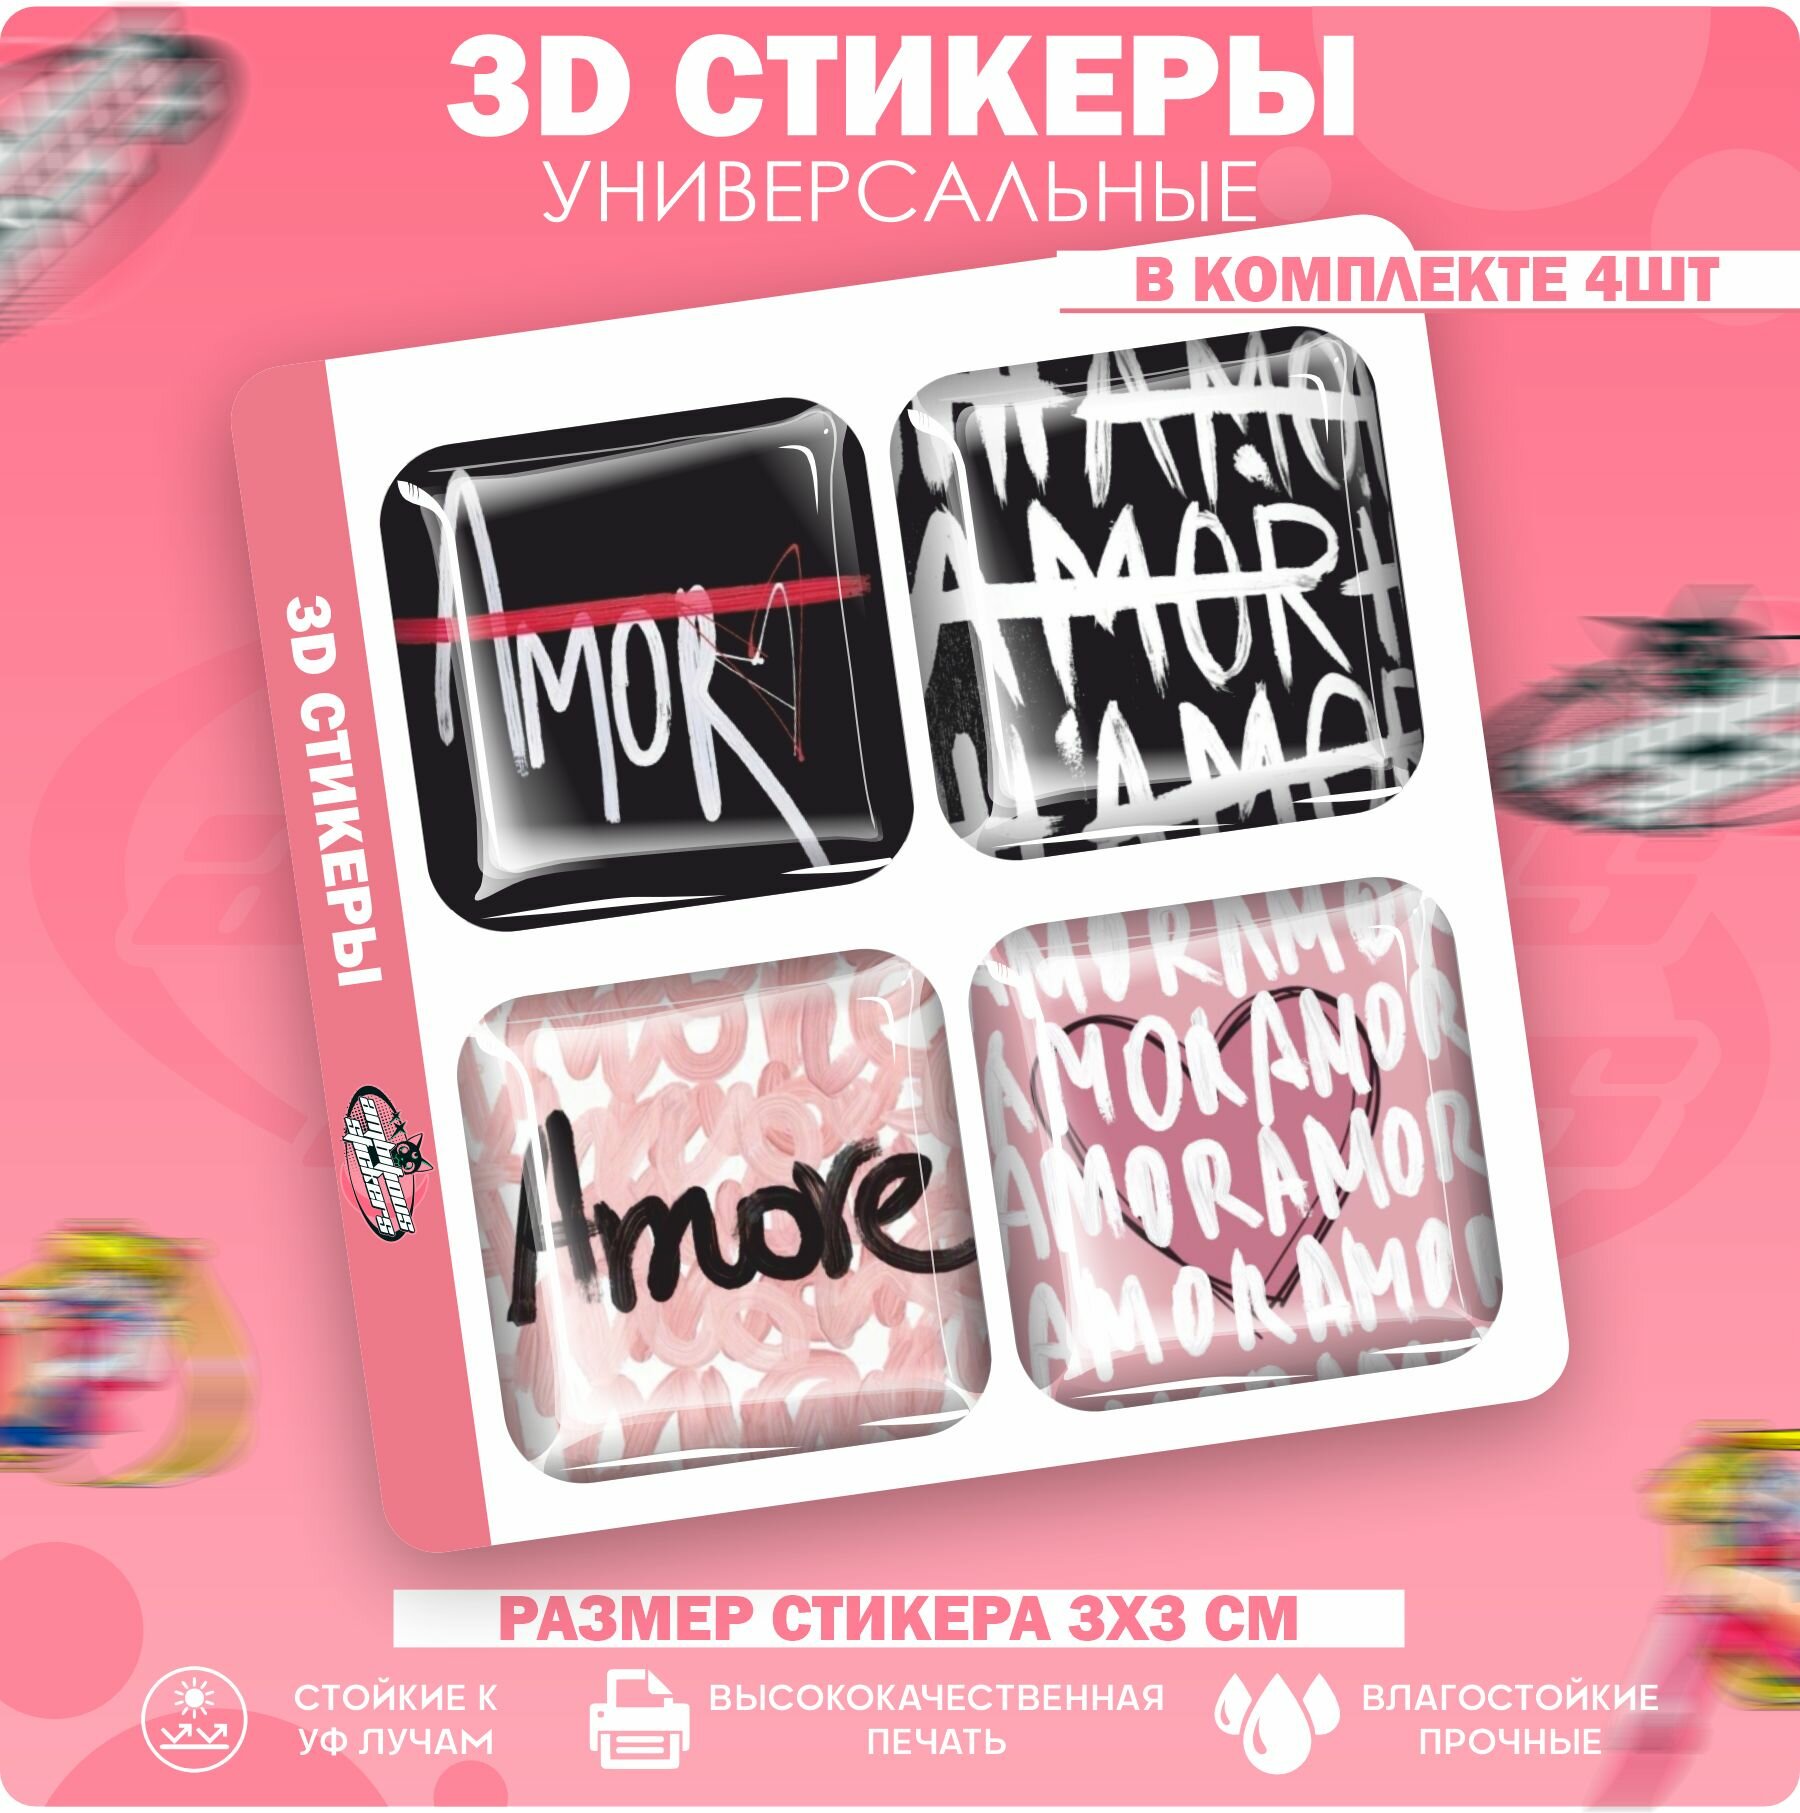 3D стикеры наклейки на телефон Amore